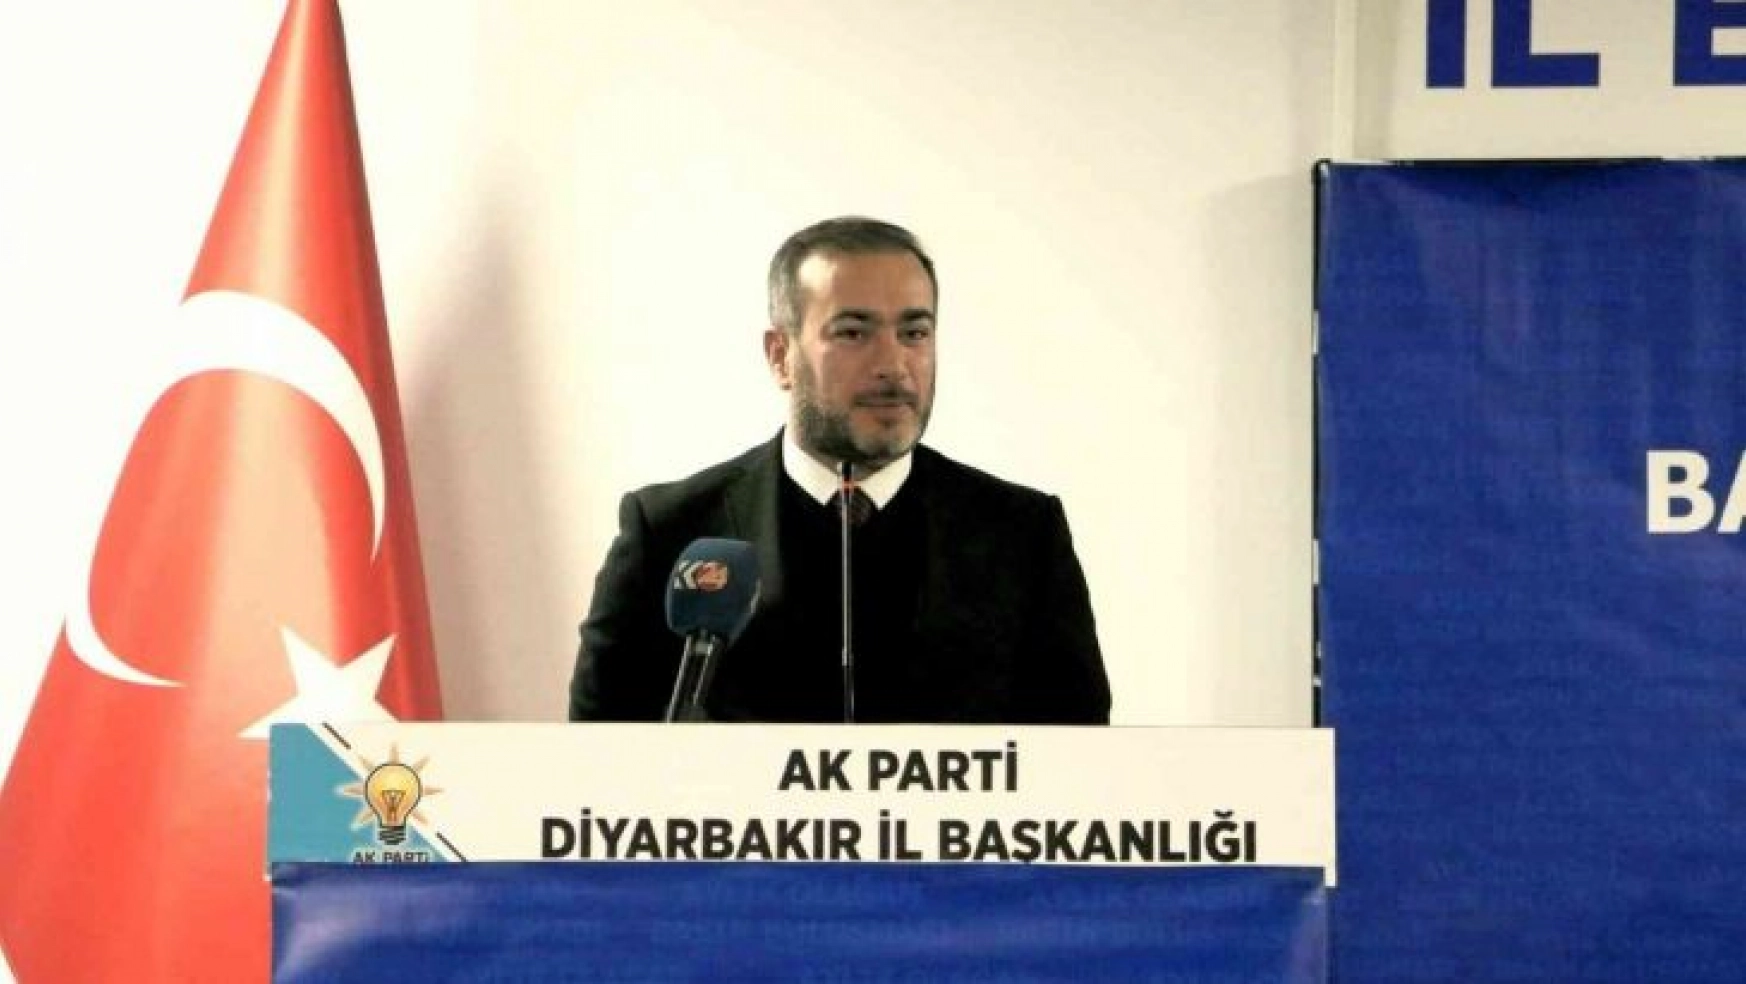 AK Parti İl Başkanı Aydın: 'Kılıçdaroğlu'nun yüreği anneleri ziyaret etmeye yetmez'